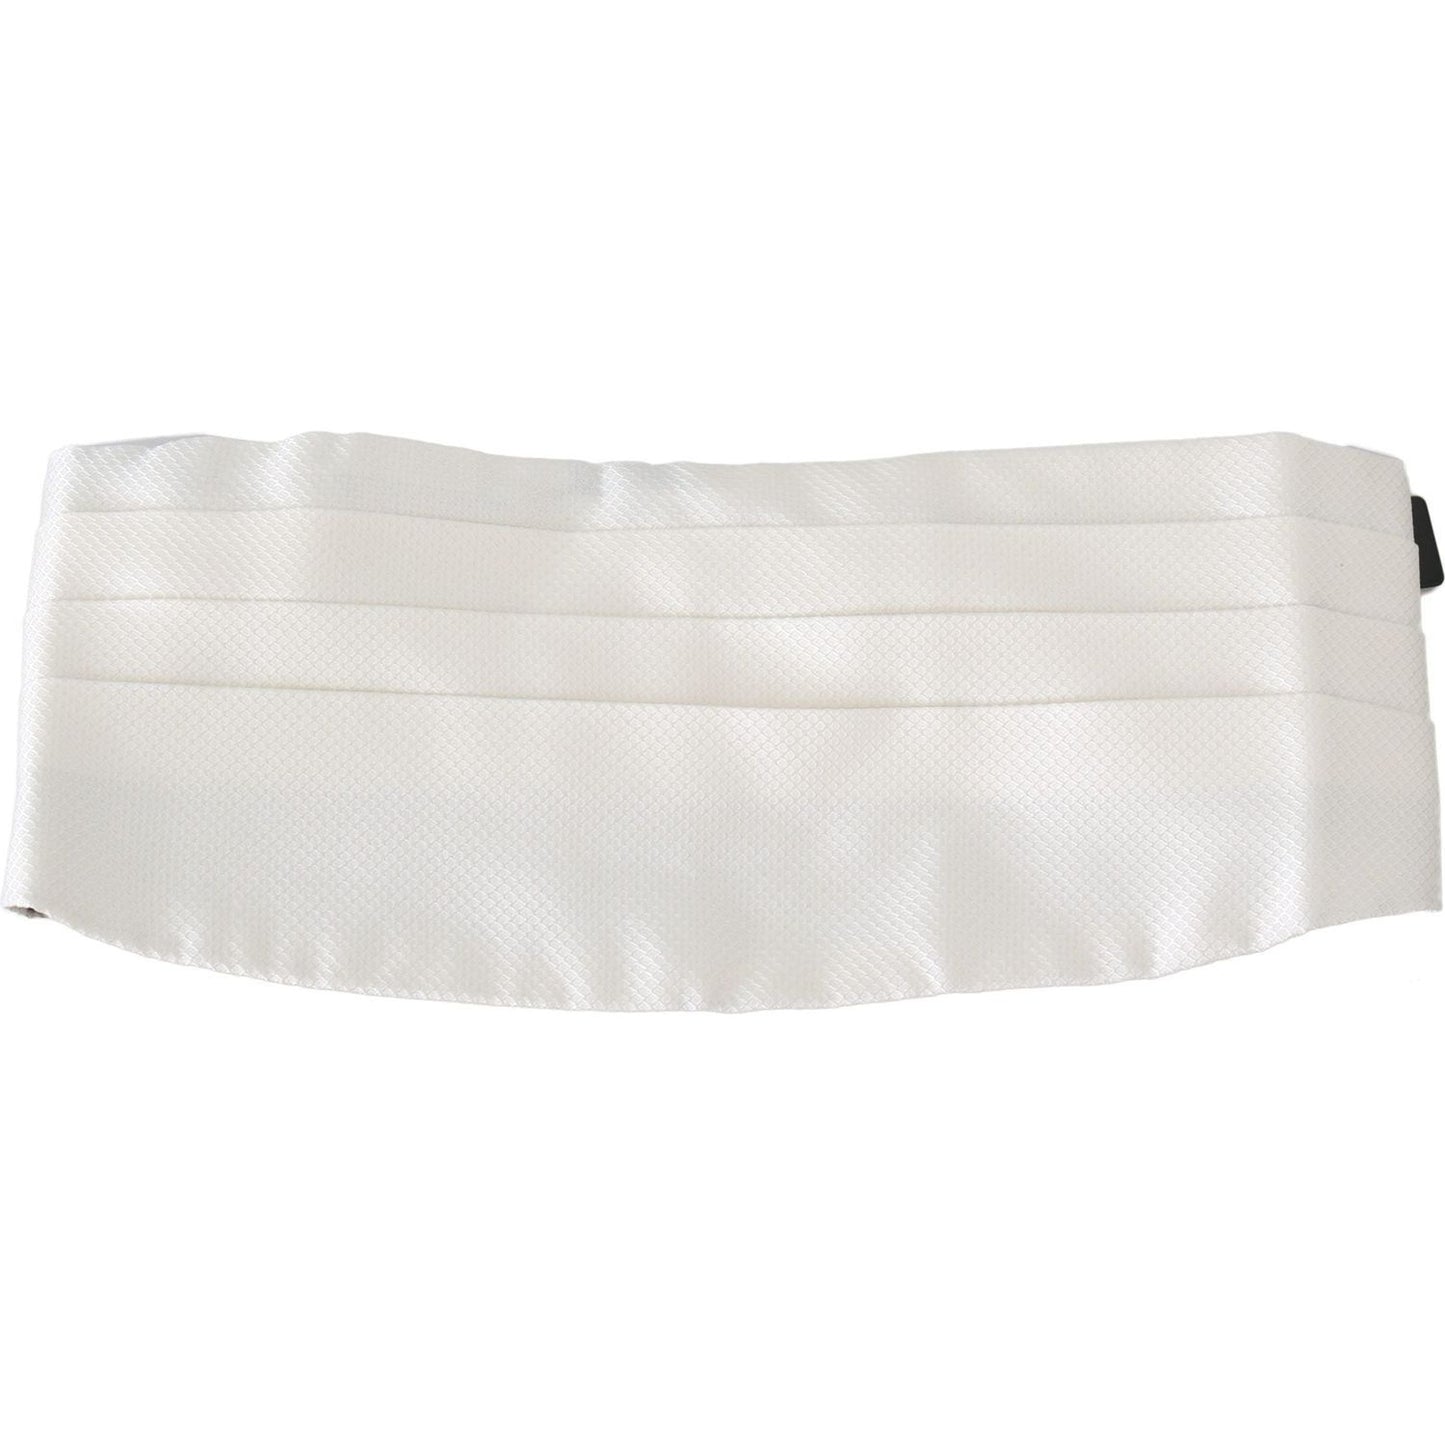 Dolce & Gabbana Elegant Silk White Patterned Cummerbund white-men-waist-belt-100-silk-cummerbund-1